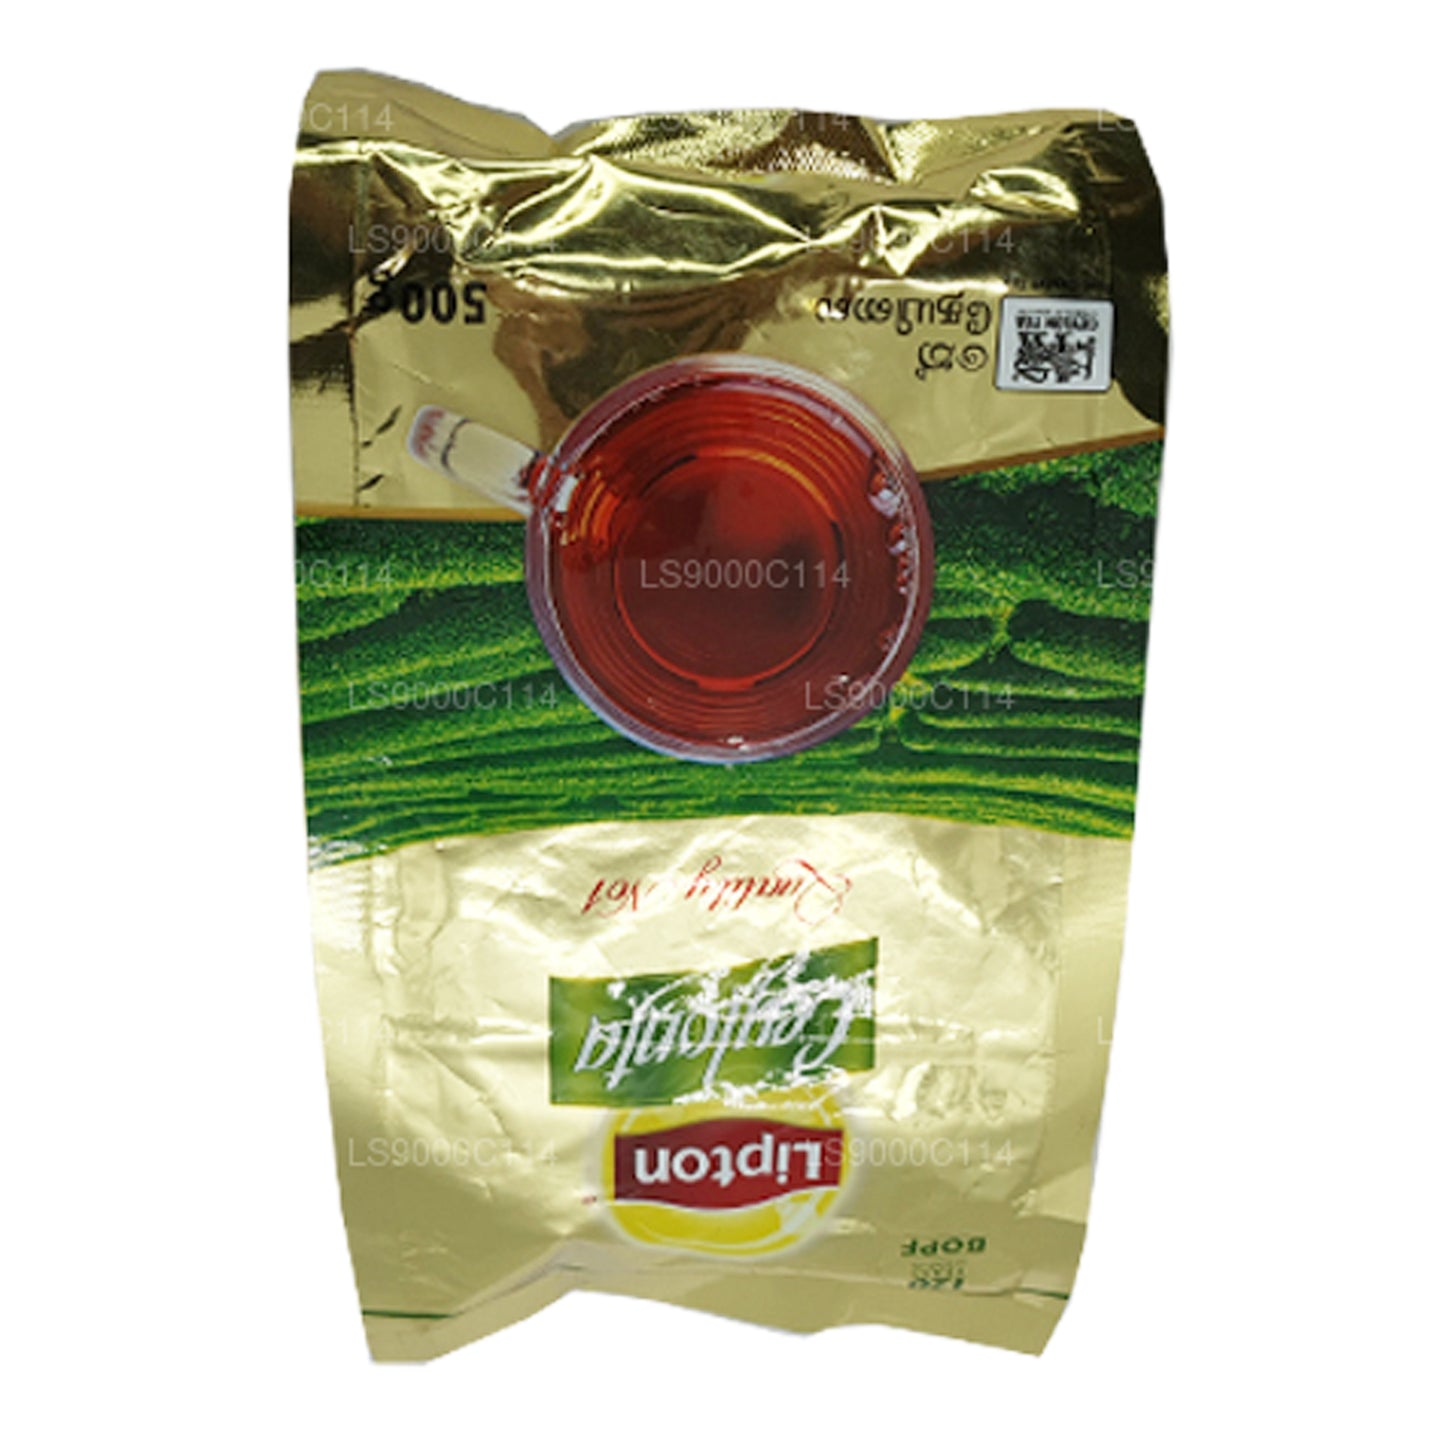 Lipton Ceylonta Çay Yaprakları (500g)